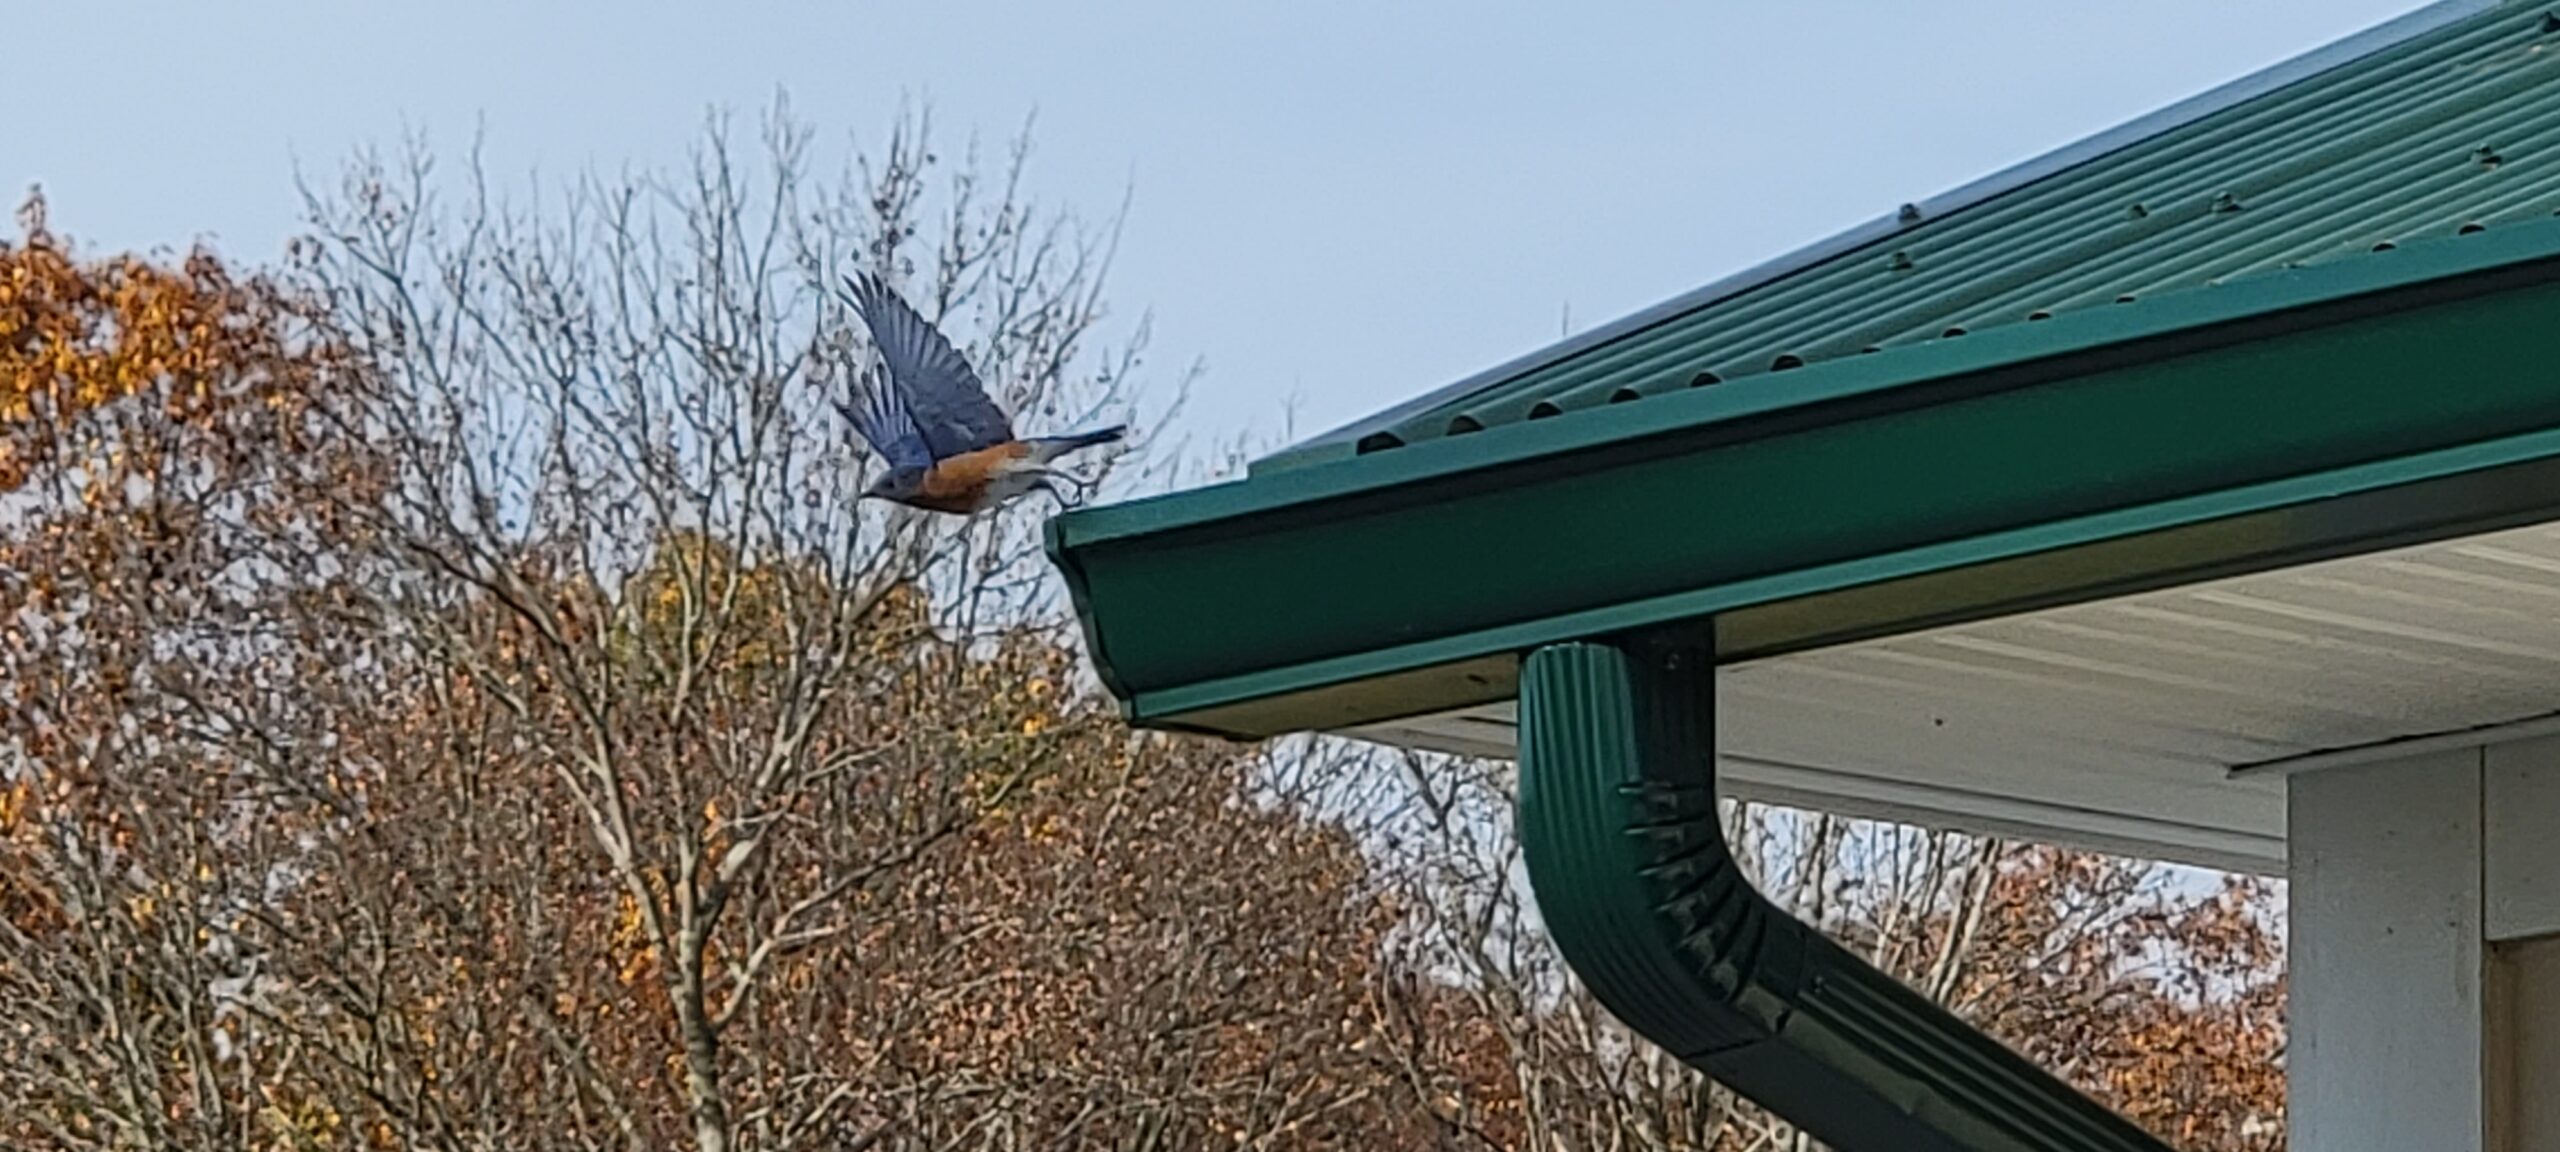 Bluebird in flight